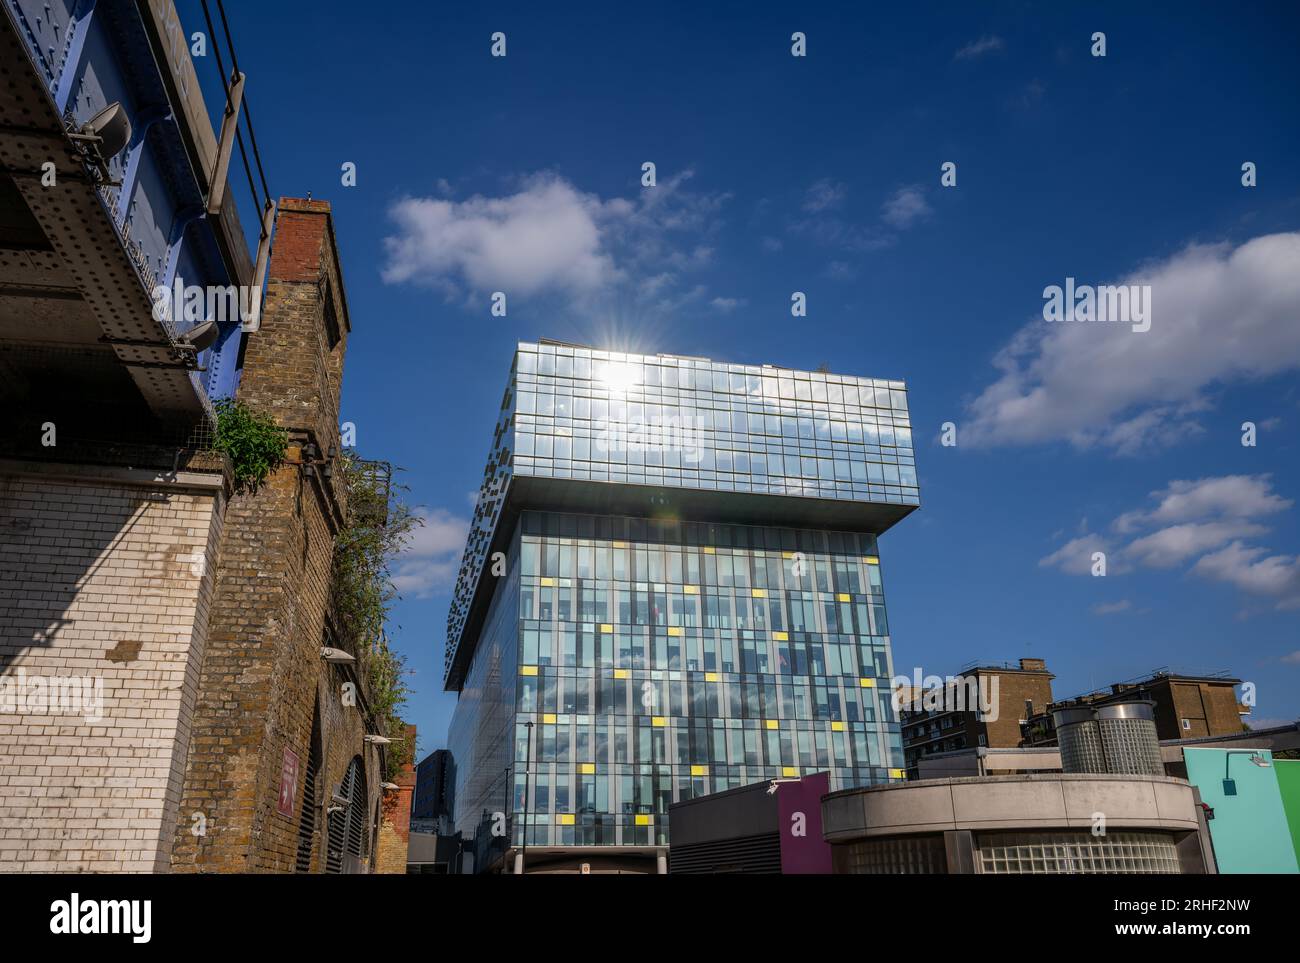 Londres, Reino Unido: El edificio Palestra en Southwark, Londres refleja el sol. Esta es una oficina corporativa de Transport para Londres en 197 Blackfriars Road. Foto de stock